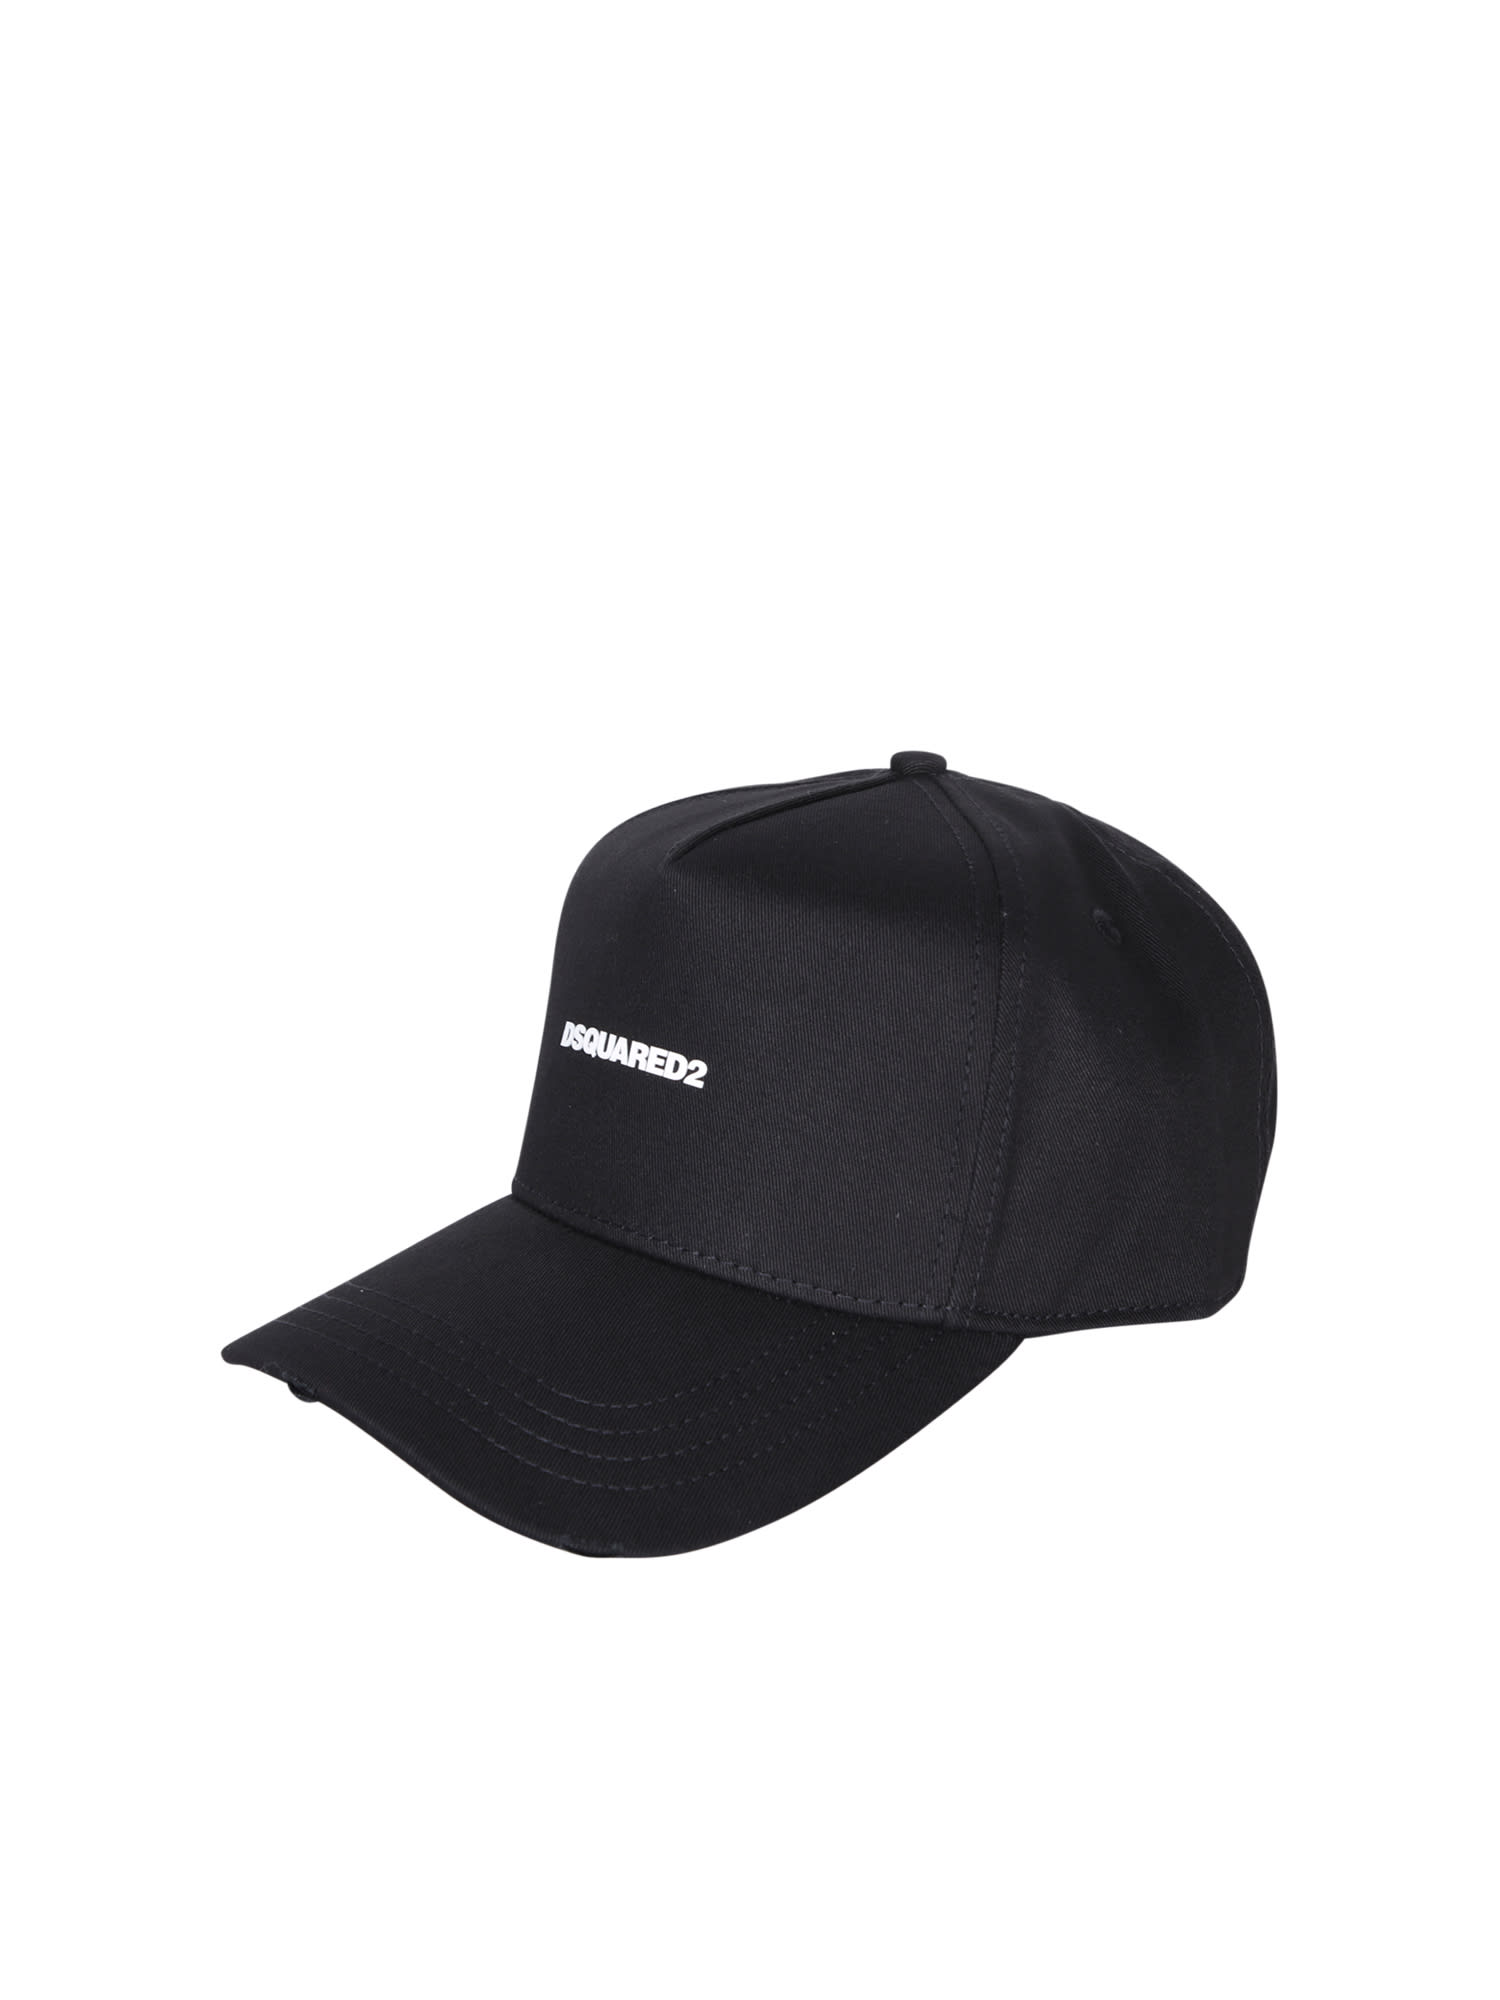 DSQUARED2 BLACK BASEBALL CAP